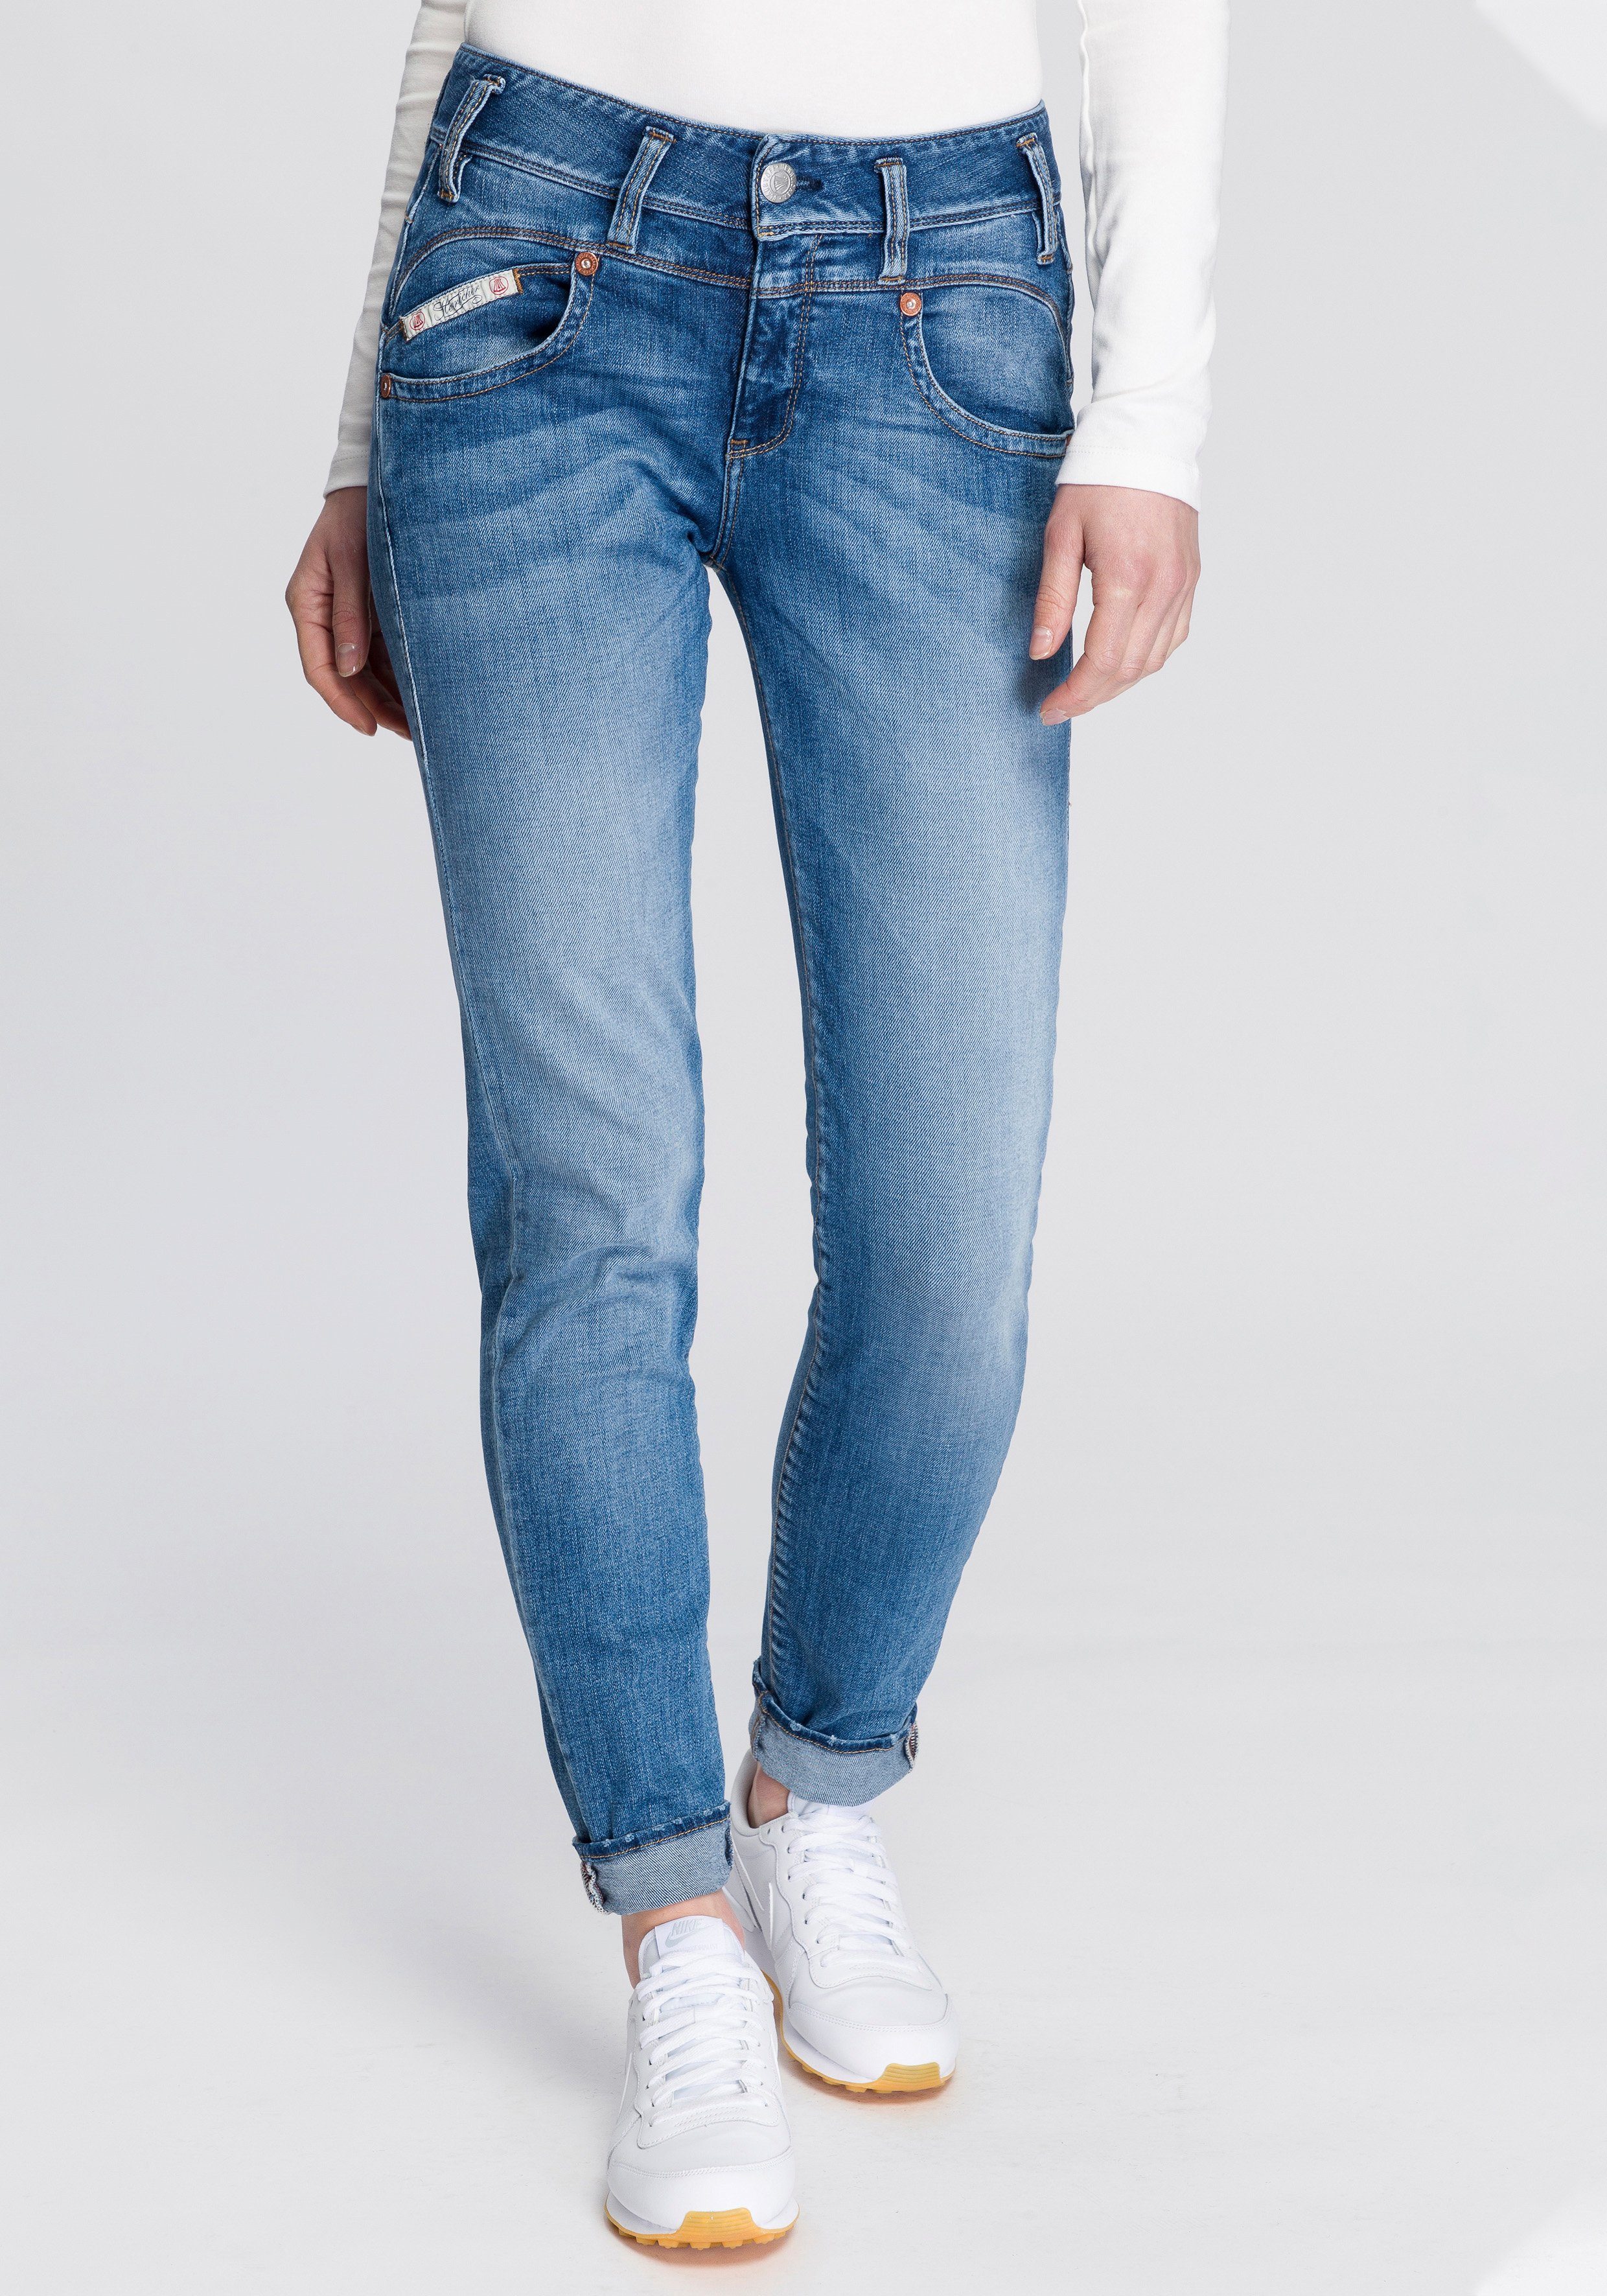 umweltfreundlich SLIM ORGANIC Kitotex dank Herrlicher Technology Slim-fit-Jeans PEARL